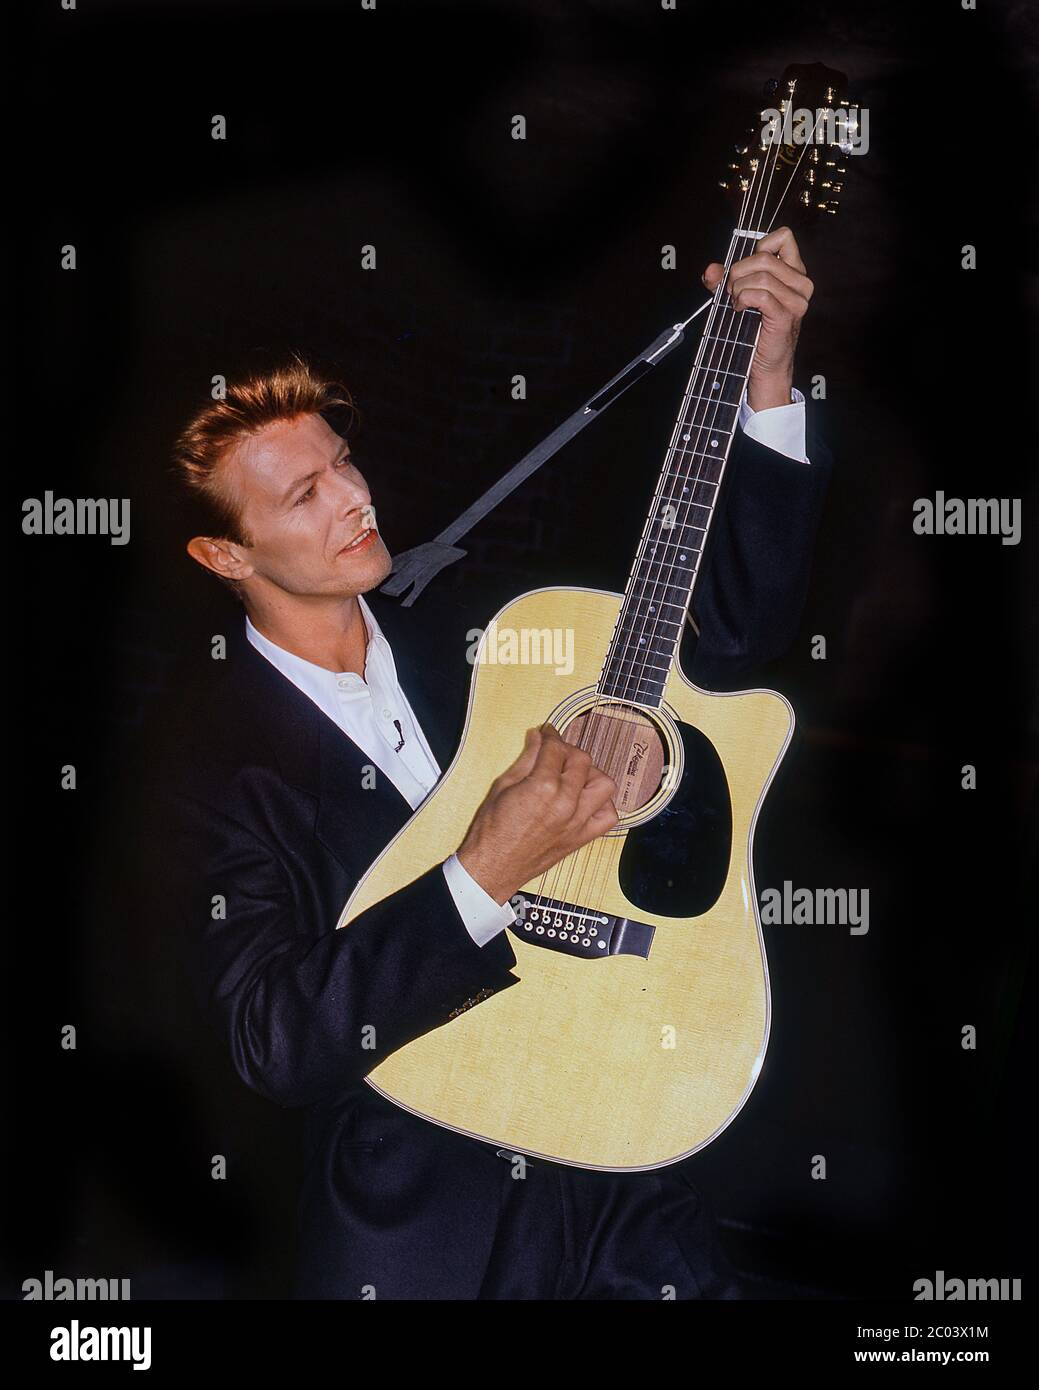 David Bowie al lancio del tour dei migliori successi Sound + Vision al Rainbow Theatre di Londra, gennaio 1990 Foto Stock